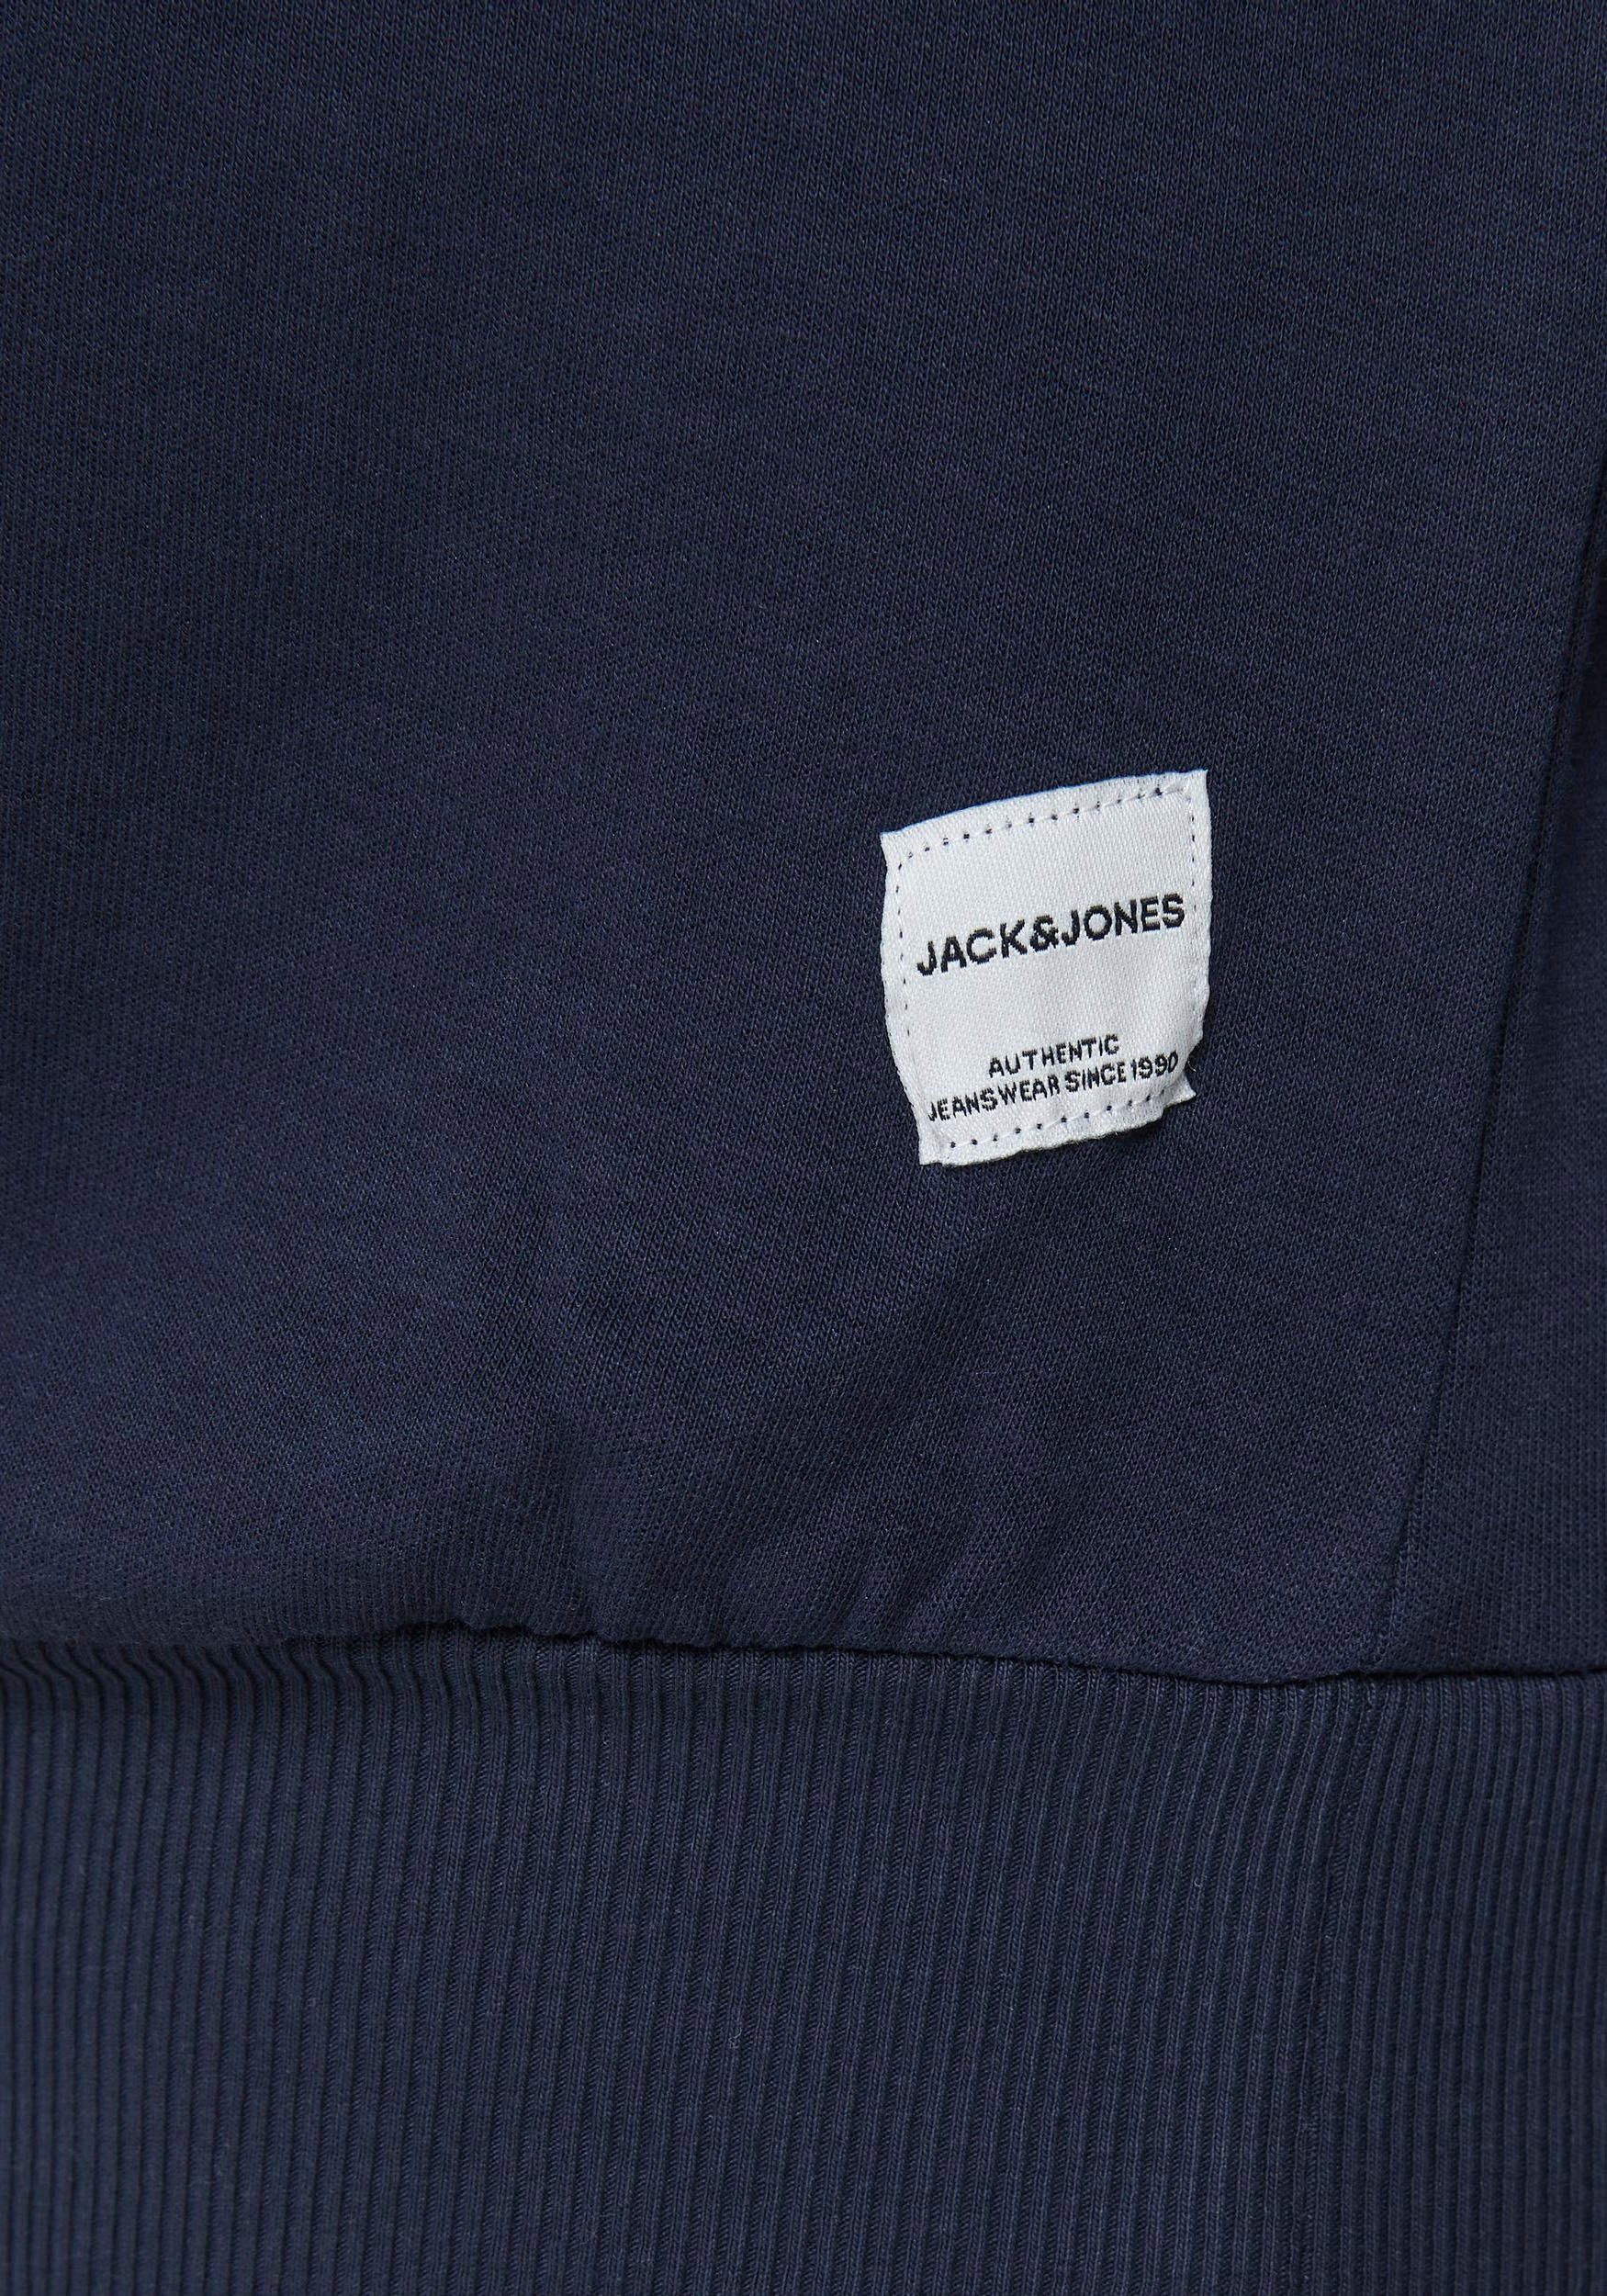 Jones CREW (Packung) BASIC PlusSize NECK & navy SWEAT Sweatshirt Jack